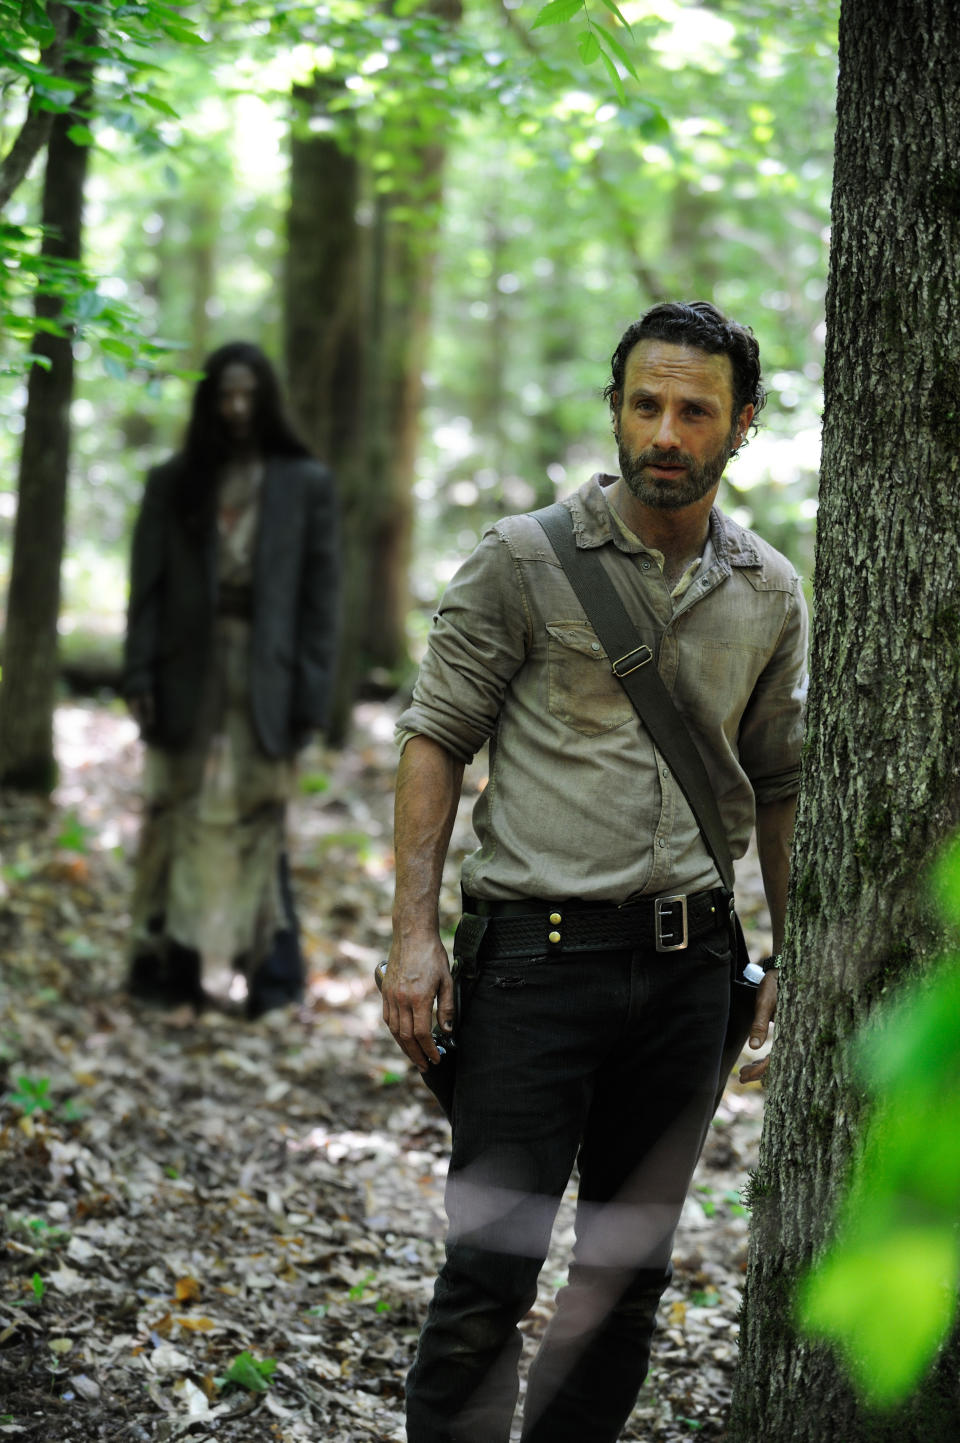 "The Walking Dead" Season 4 premieres Sun., Oct. 13 at 9 p.m. ET on AMC.